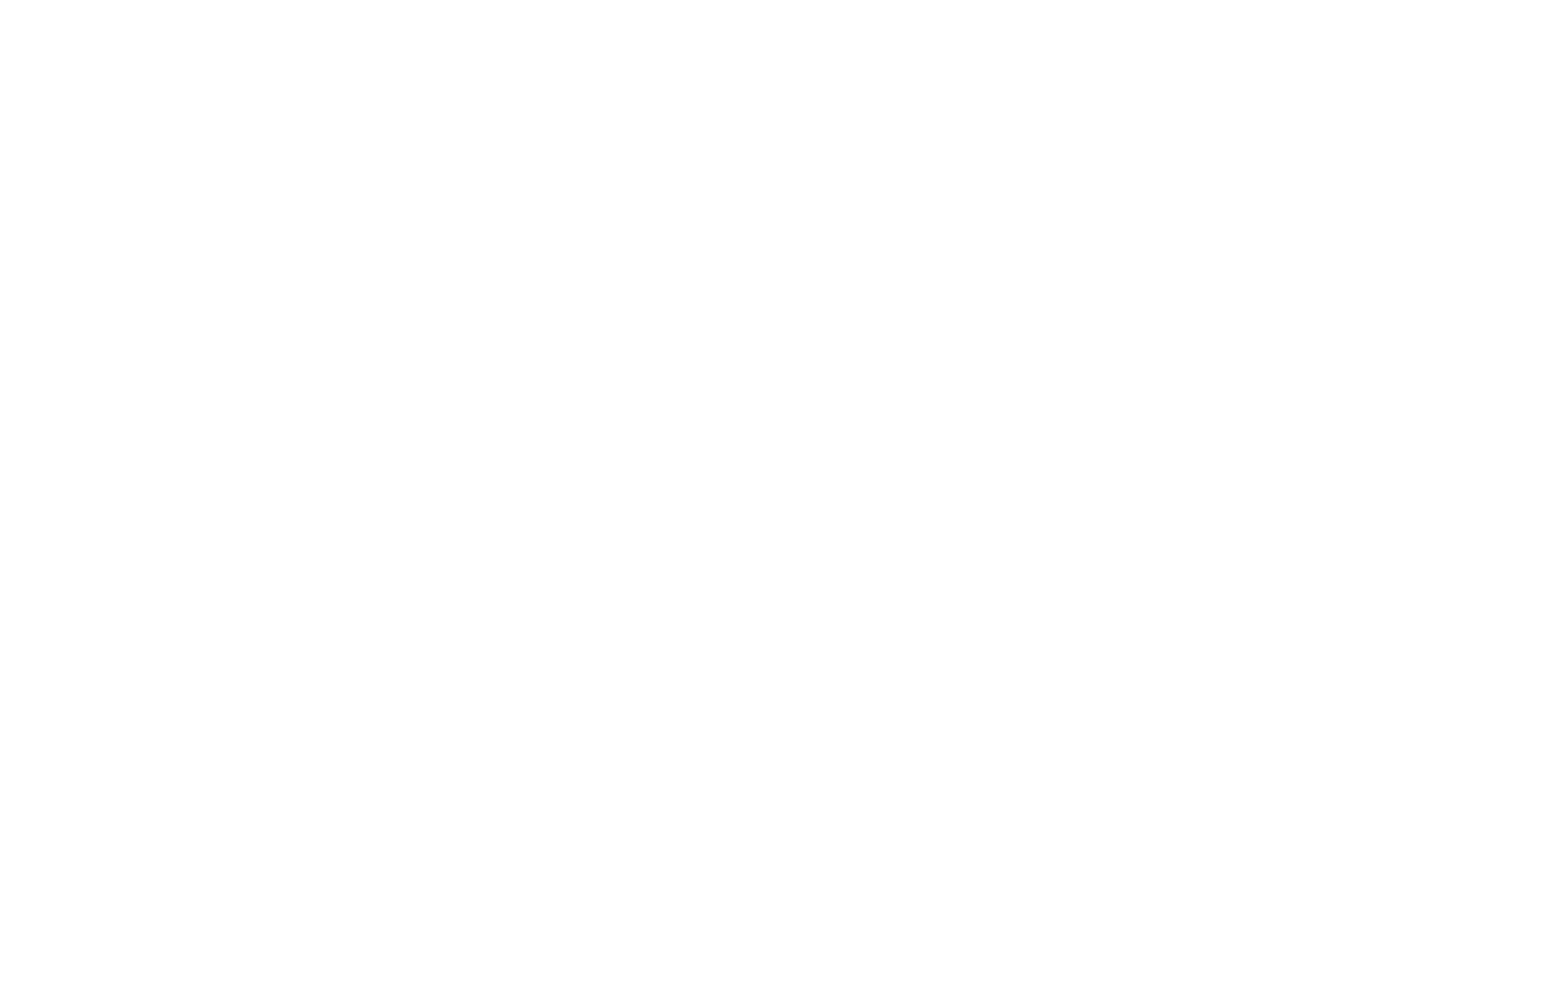 Black Friday Summer Sale Promotion PNG